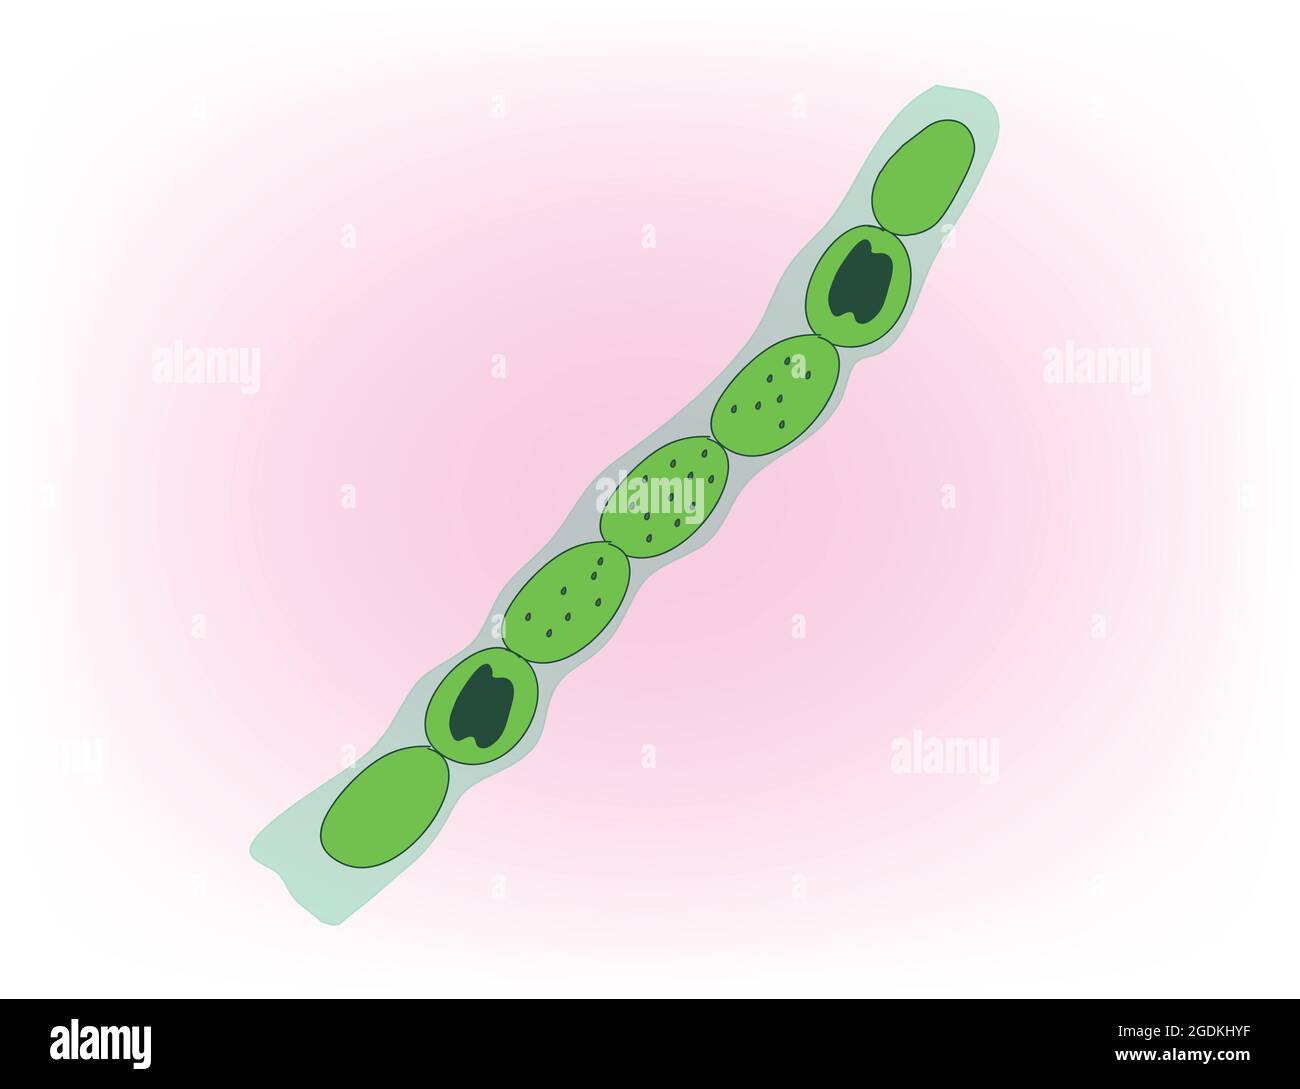 Nostoc è un genere di cianobatteri che si trova in vari ambienti che formano colonie composte da filamenti di cellule monoliformi in una guaina gelatinosa. Illustrazione Vettoriale